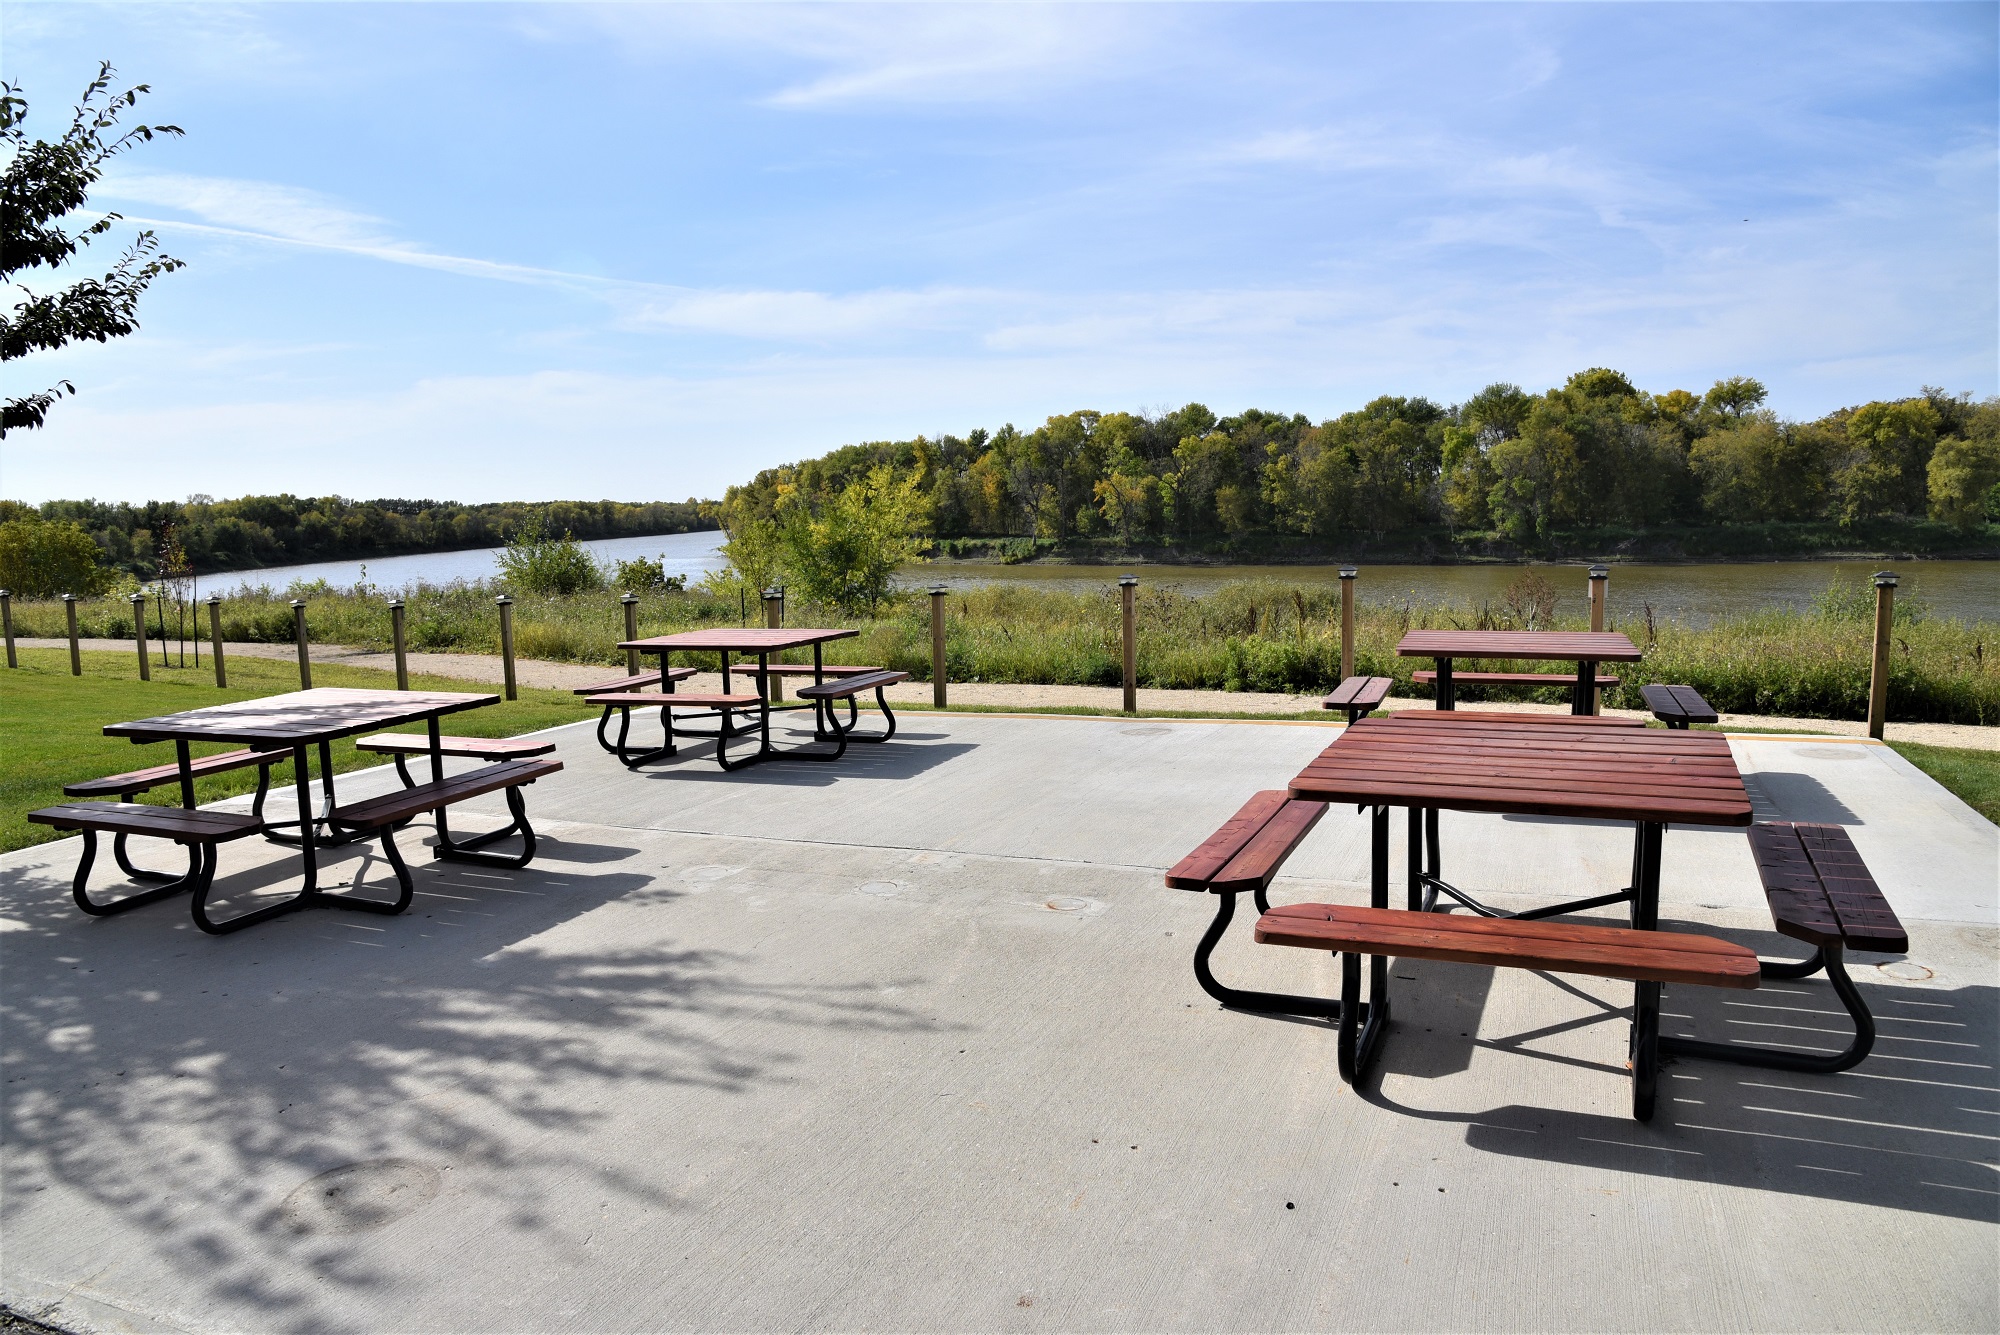 Common area picnic benches